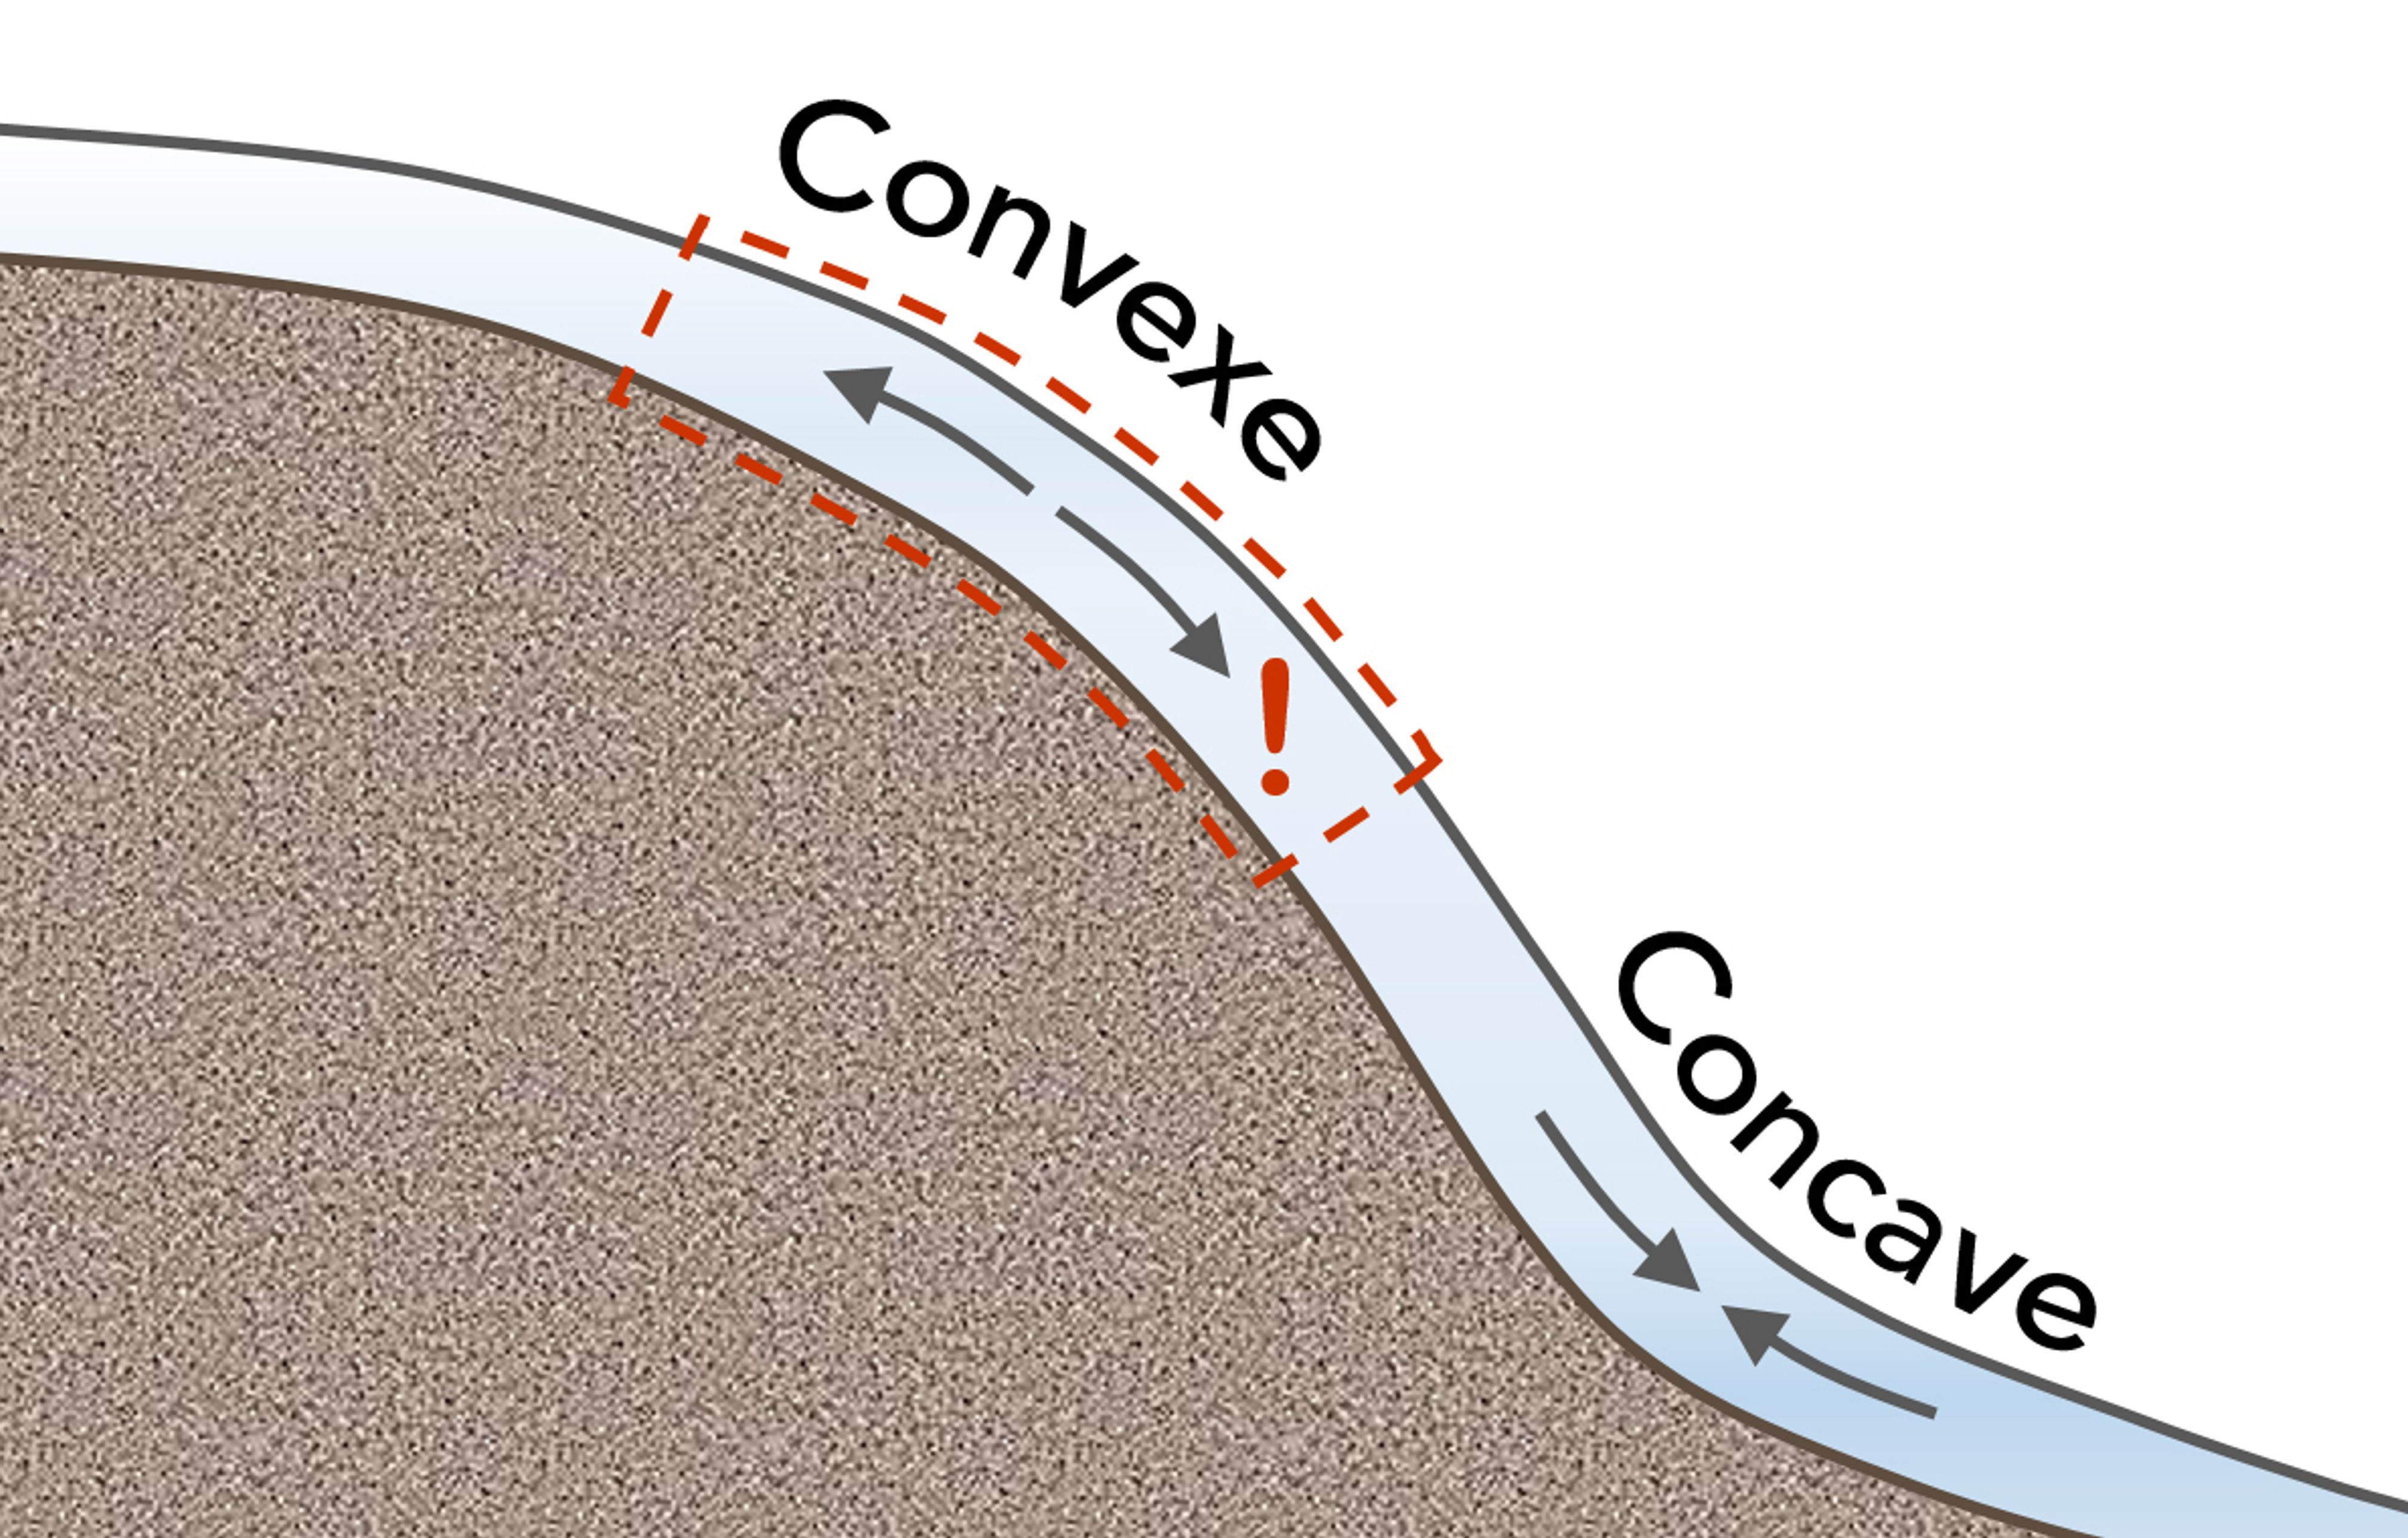 Comparées aux autres types de pentes, les pentes convexes ont davantage tendance à être un point déclencheur. La section concave d’une petite pente peut parfois soutenir une section plus abrupte qui se trouve plus haut.